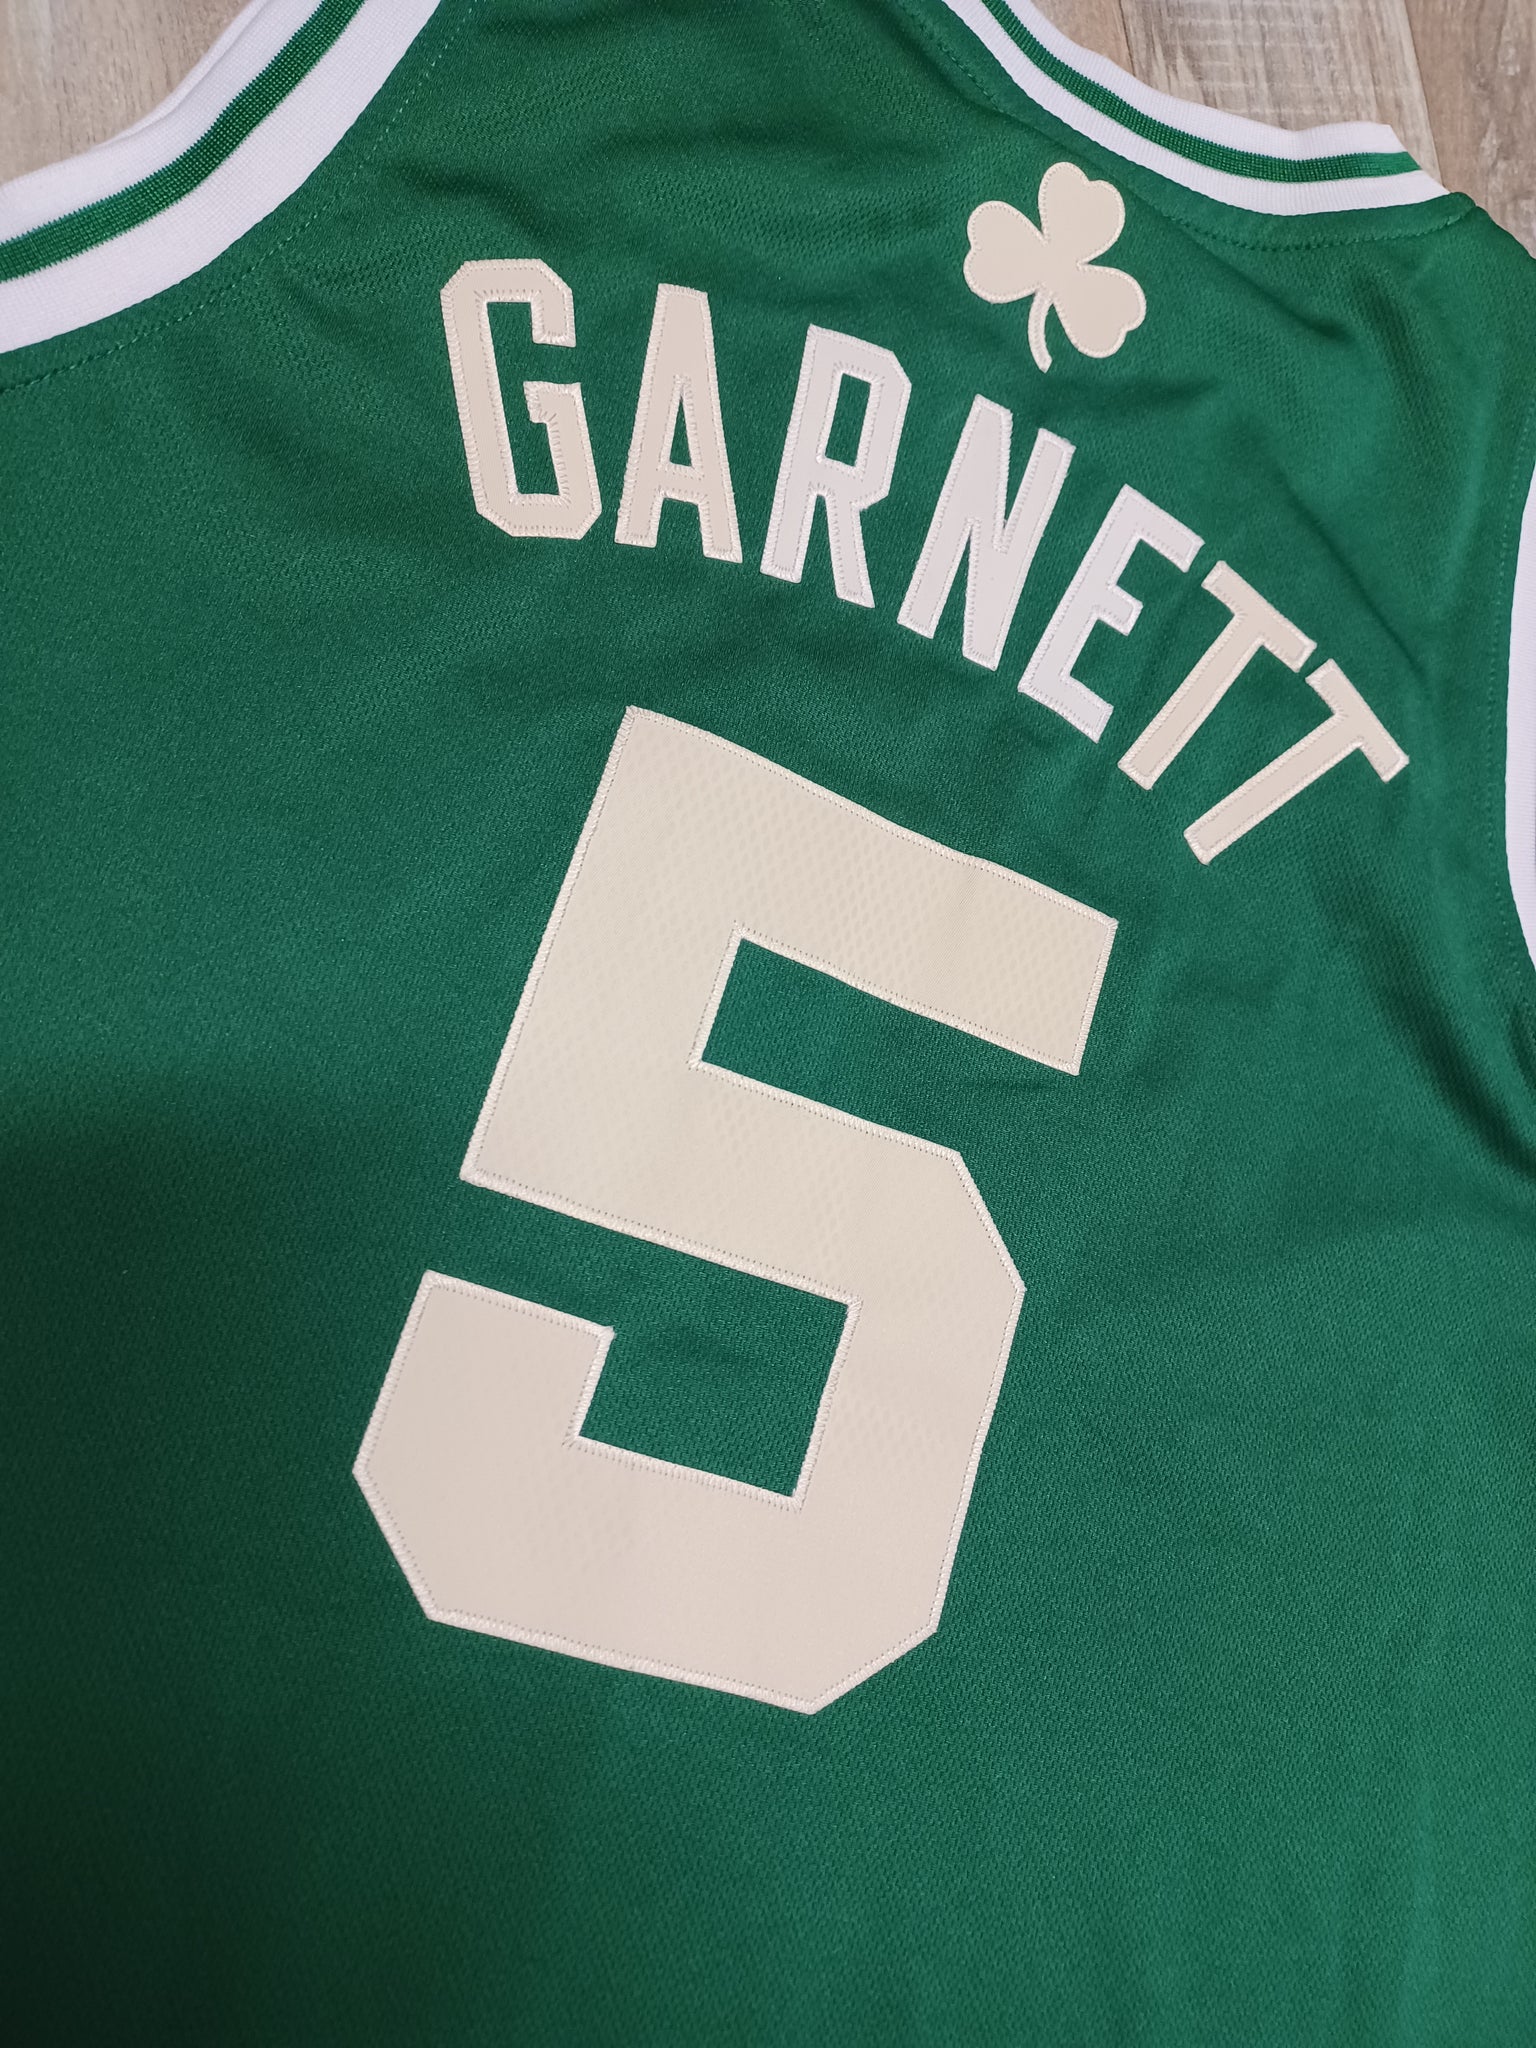 Vintage adidas Kevin Garnett Boston Celtics Basketball Jersey